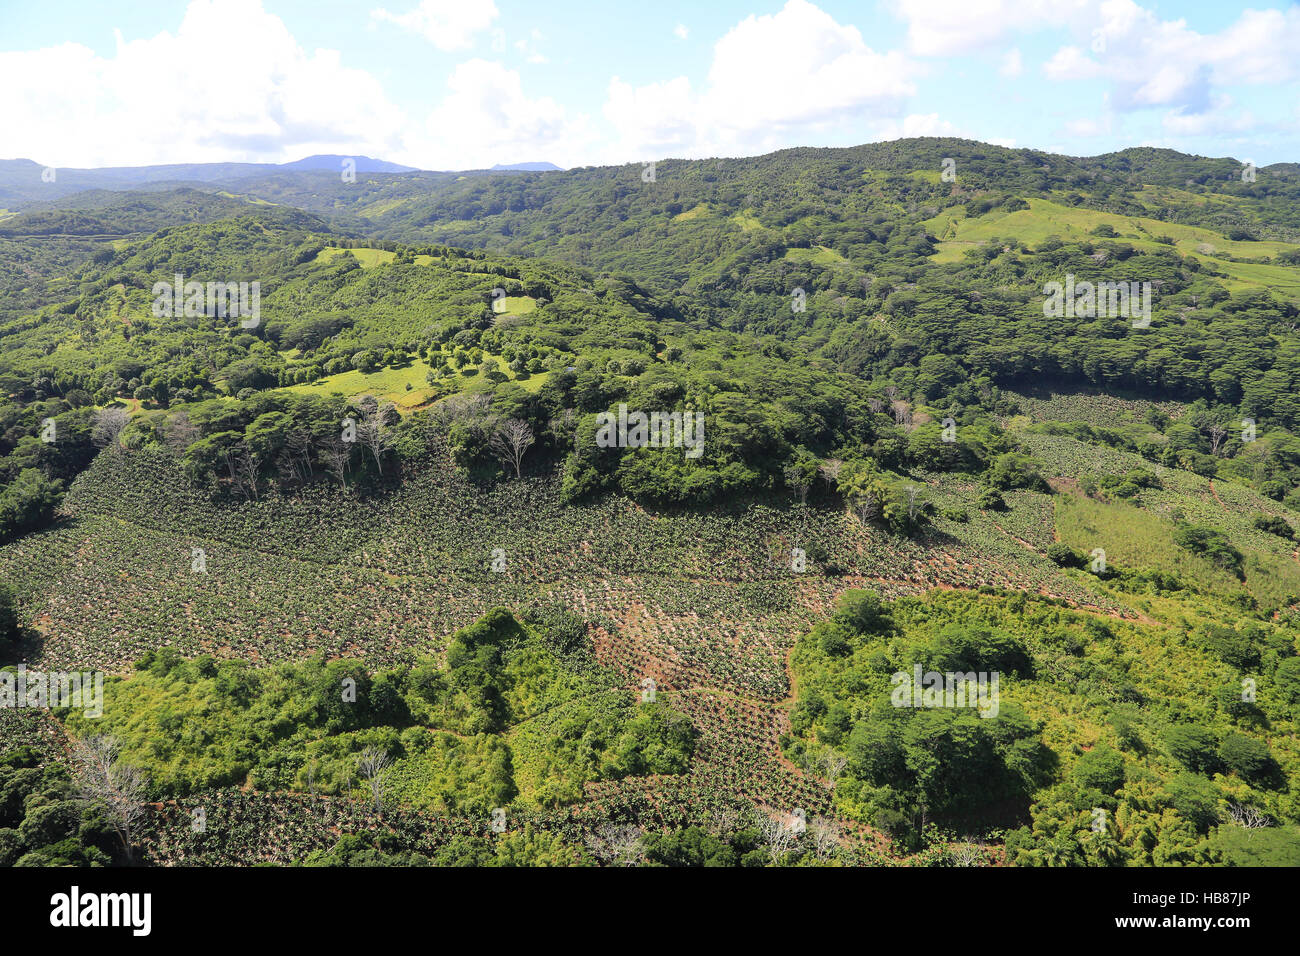 Maurizio, Landschaft mit Bananen Plantage Foto Stock